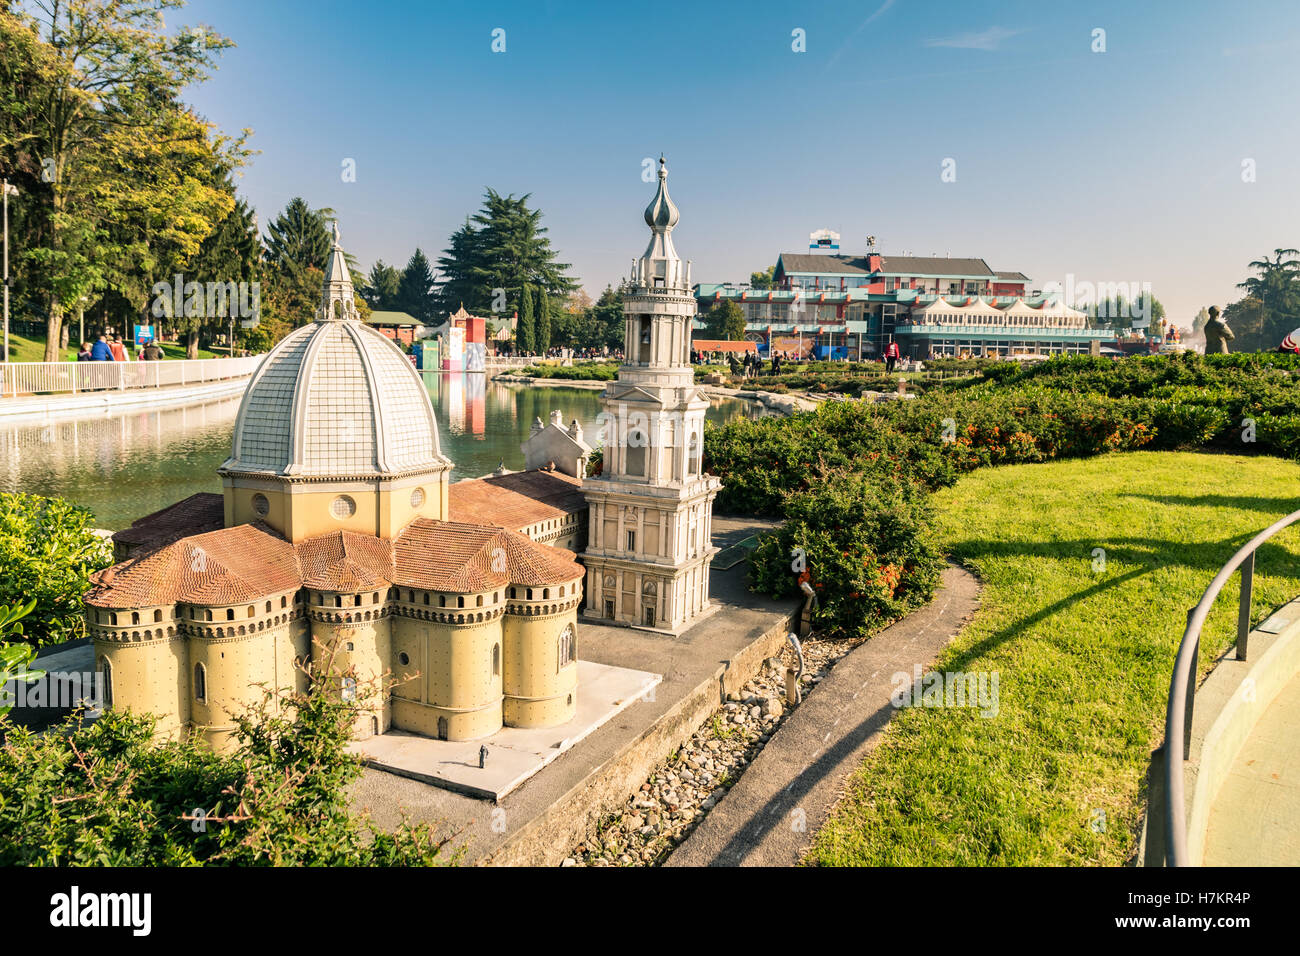 Bergamo, Italia - 30 Ottobre 2016: Leolandia è un parco di divertimenti famoso per la riproduzione in miniatura dell'Italia. Foto Stock